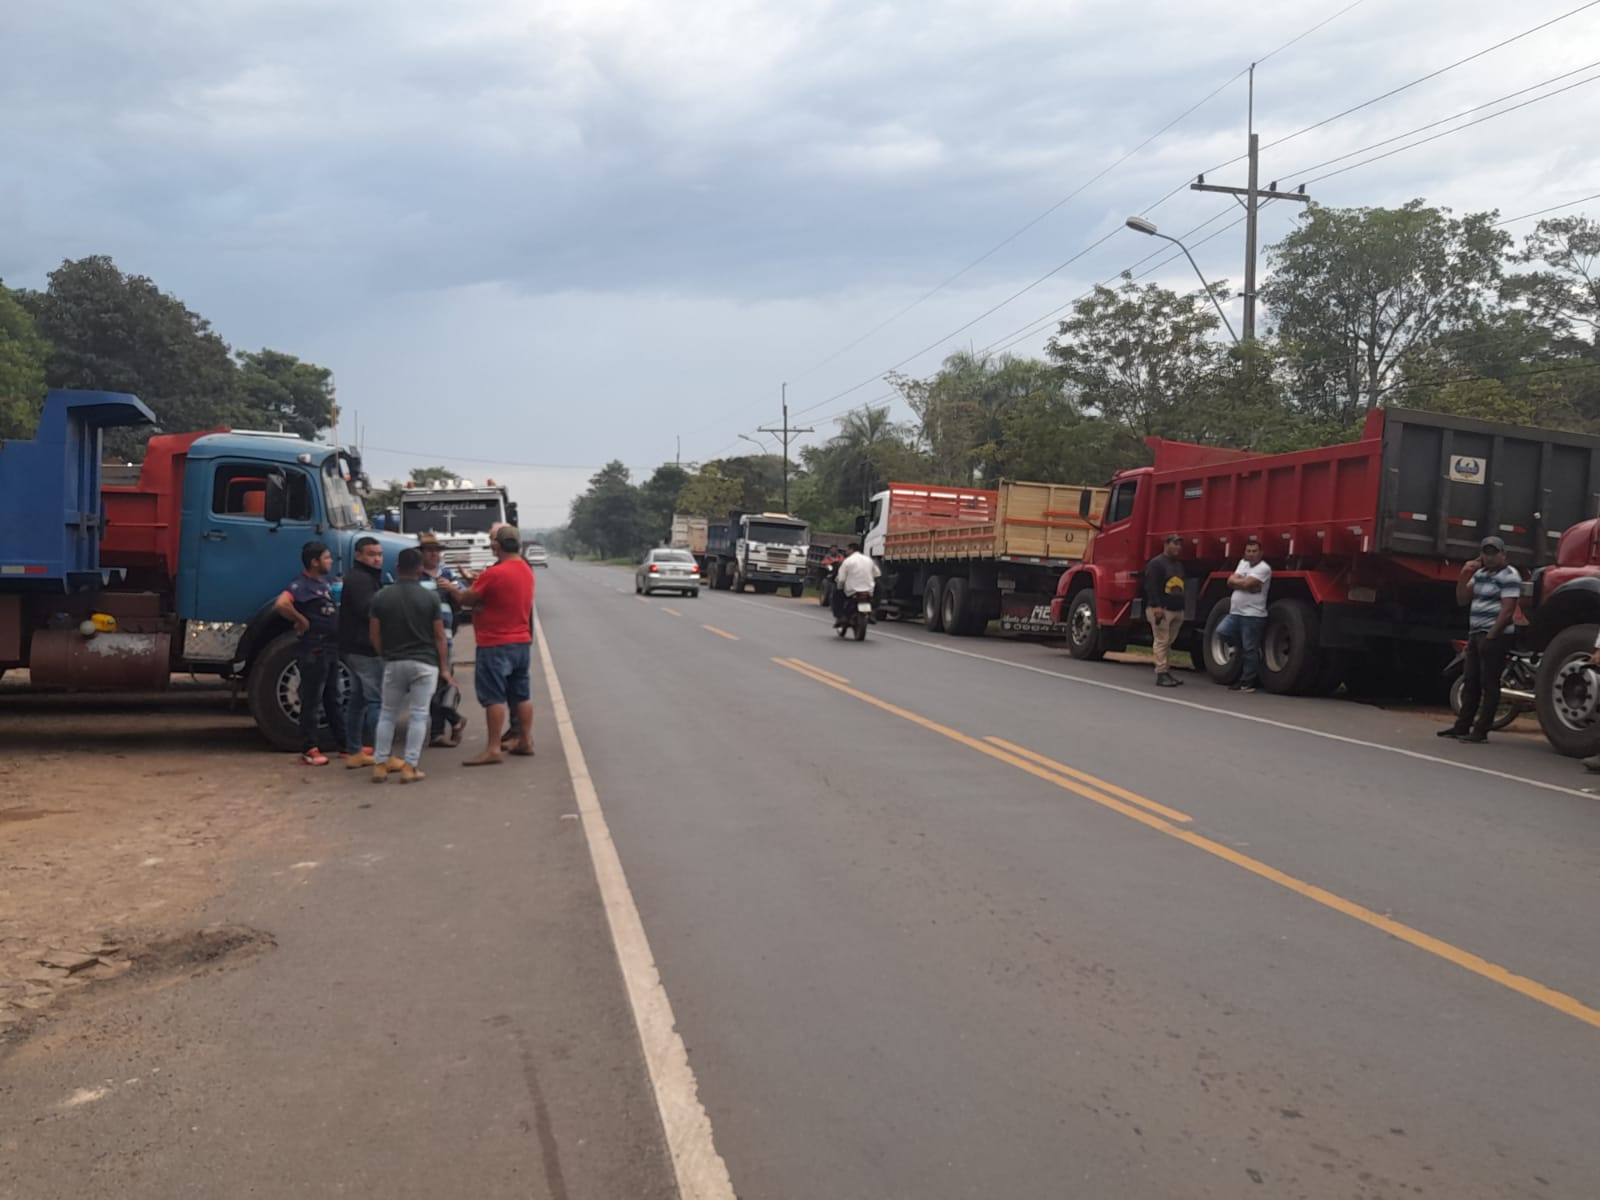 Camioneros paran para exigir que Petropar compre combustible sin intermediarios. Foto: Denis Barrios, cronista de Trece.